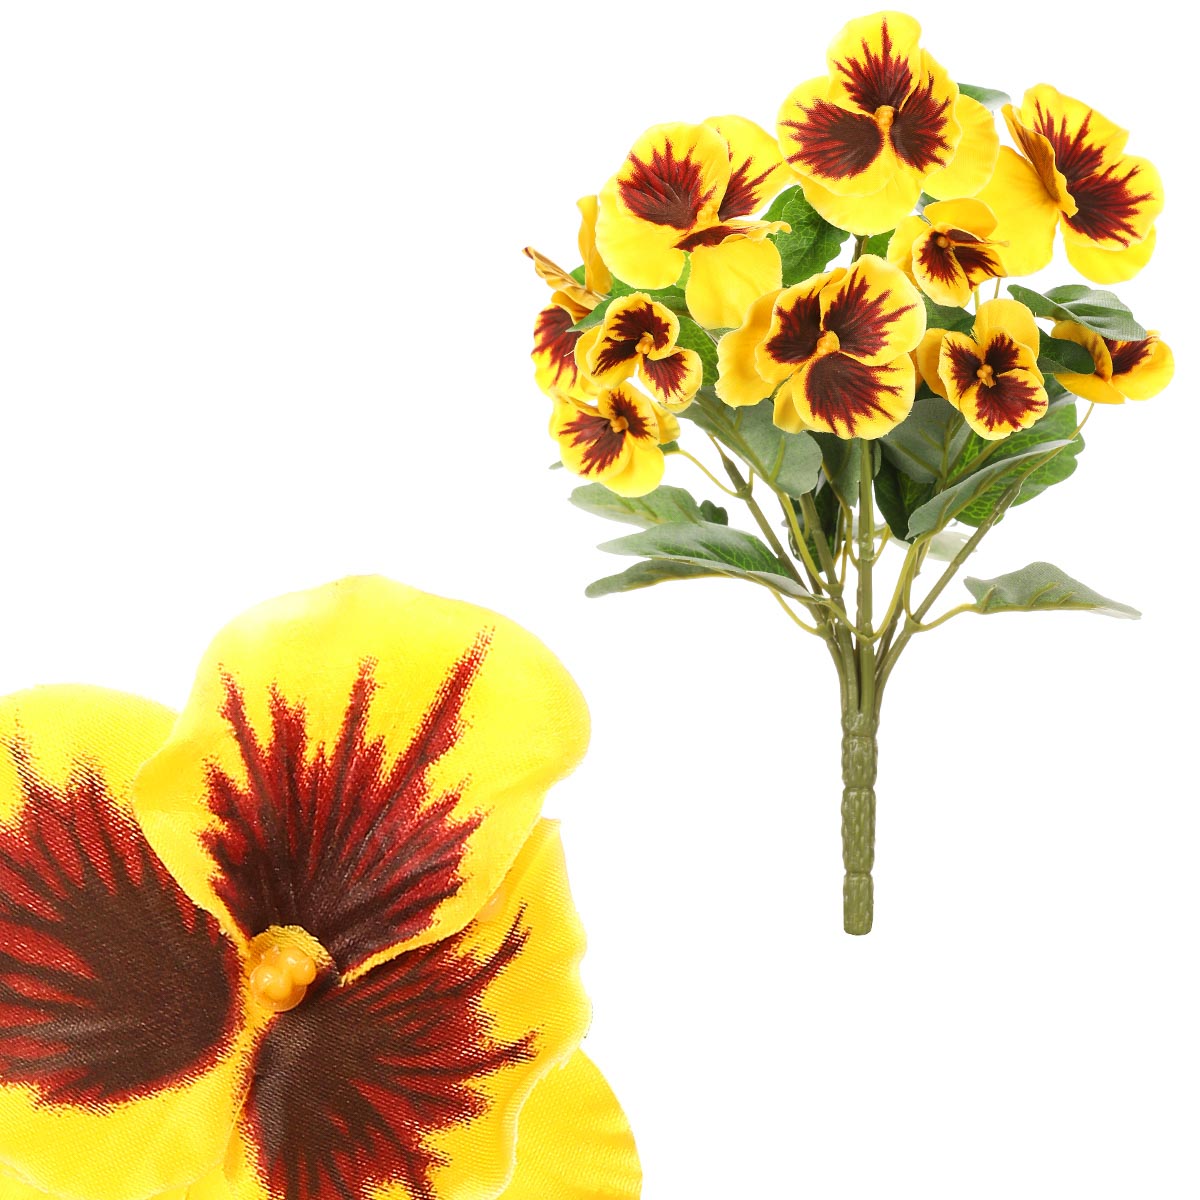 Maceška - kytice z umělých květin, barva žlutá.